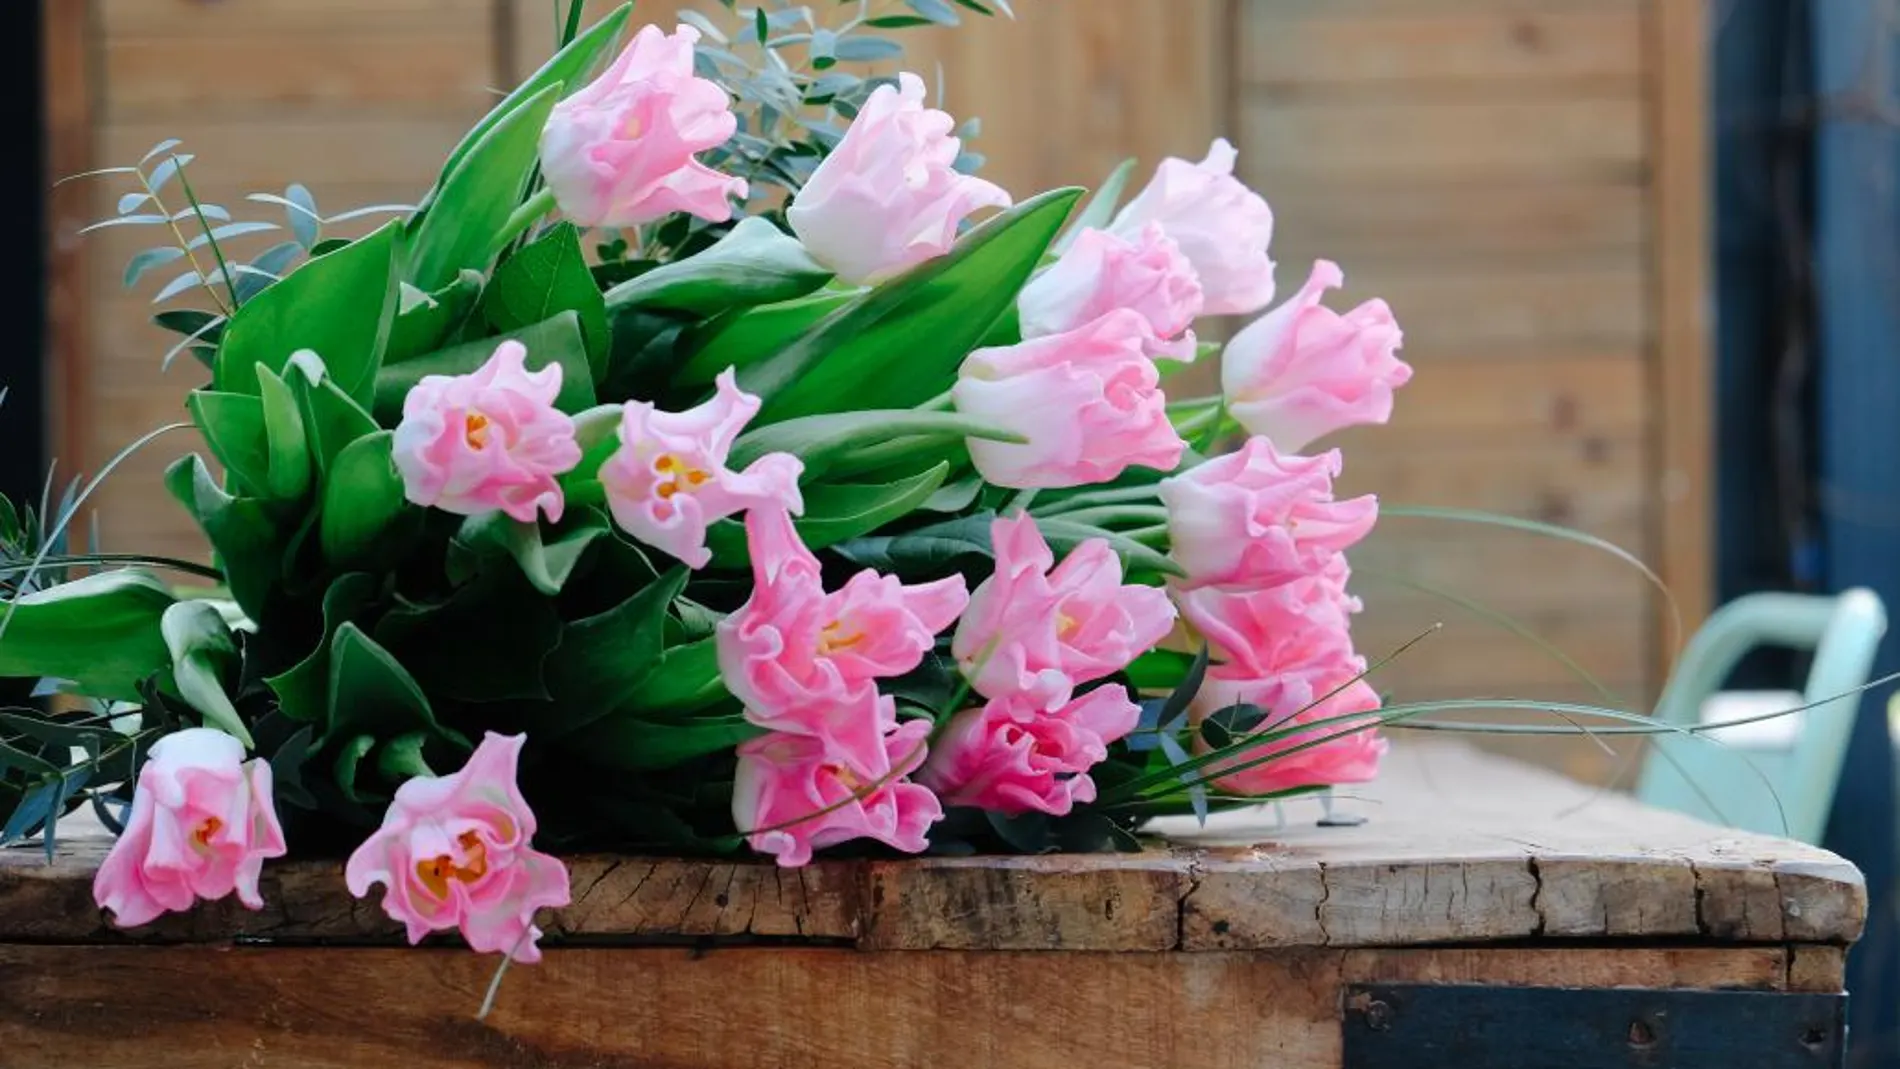 Bourguignon presenta TULIPMANIA, una nueva colección de ramos con las variedades más especiales de tulipanes